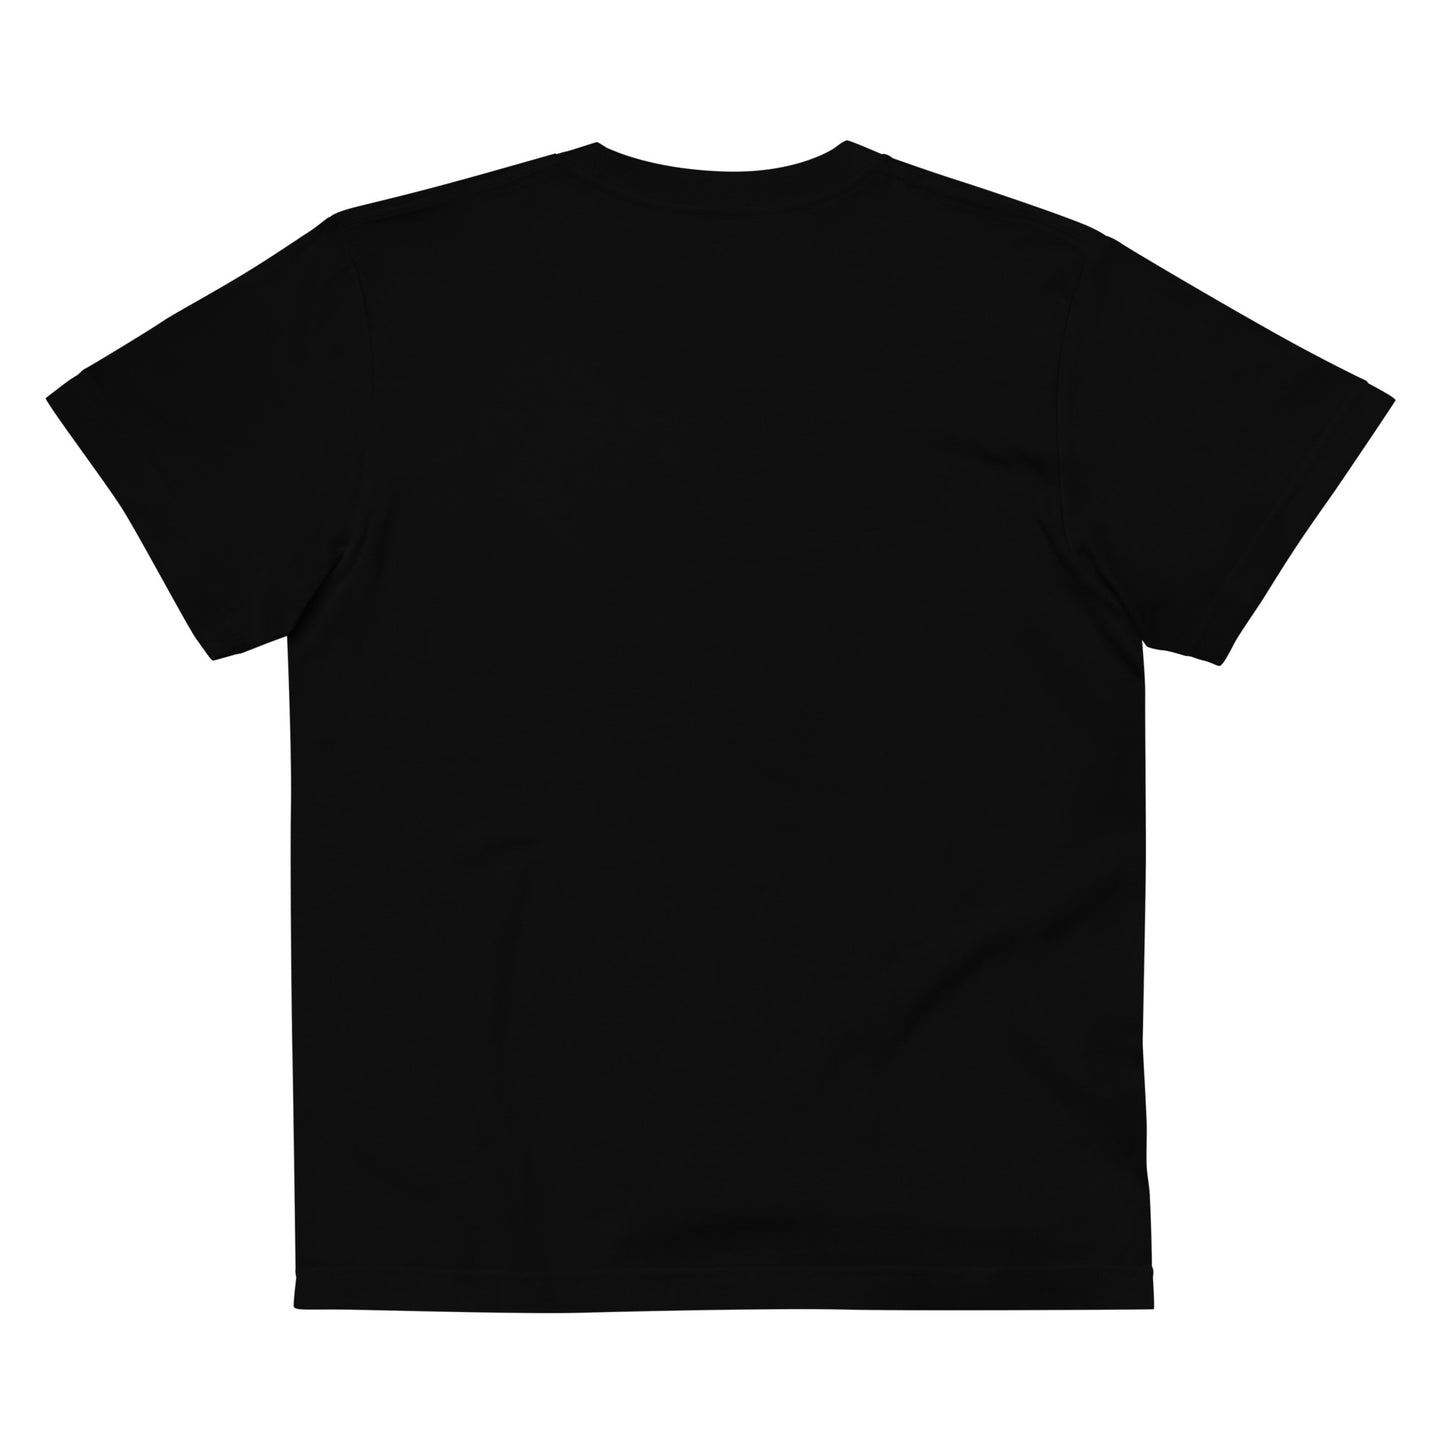 E015 - Tシャツ/レギュラーフィット (ユニバーサルジャンプ : ブラック/シルバー)